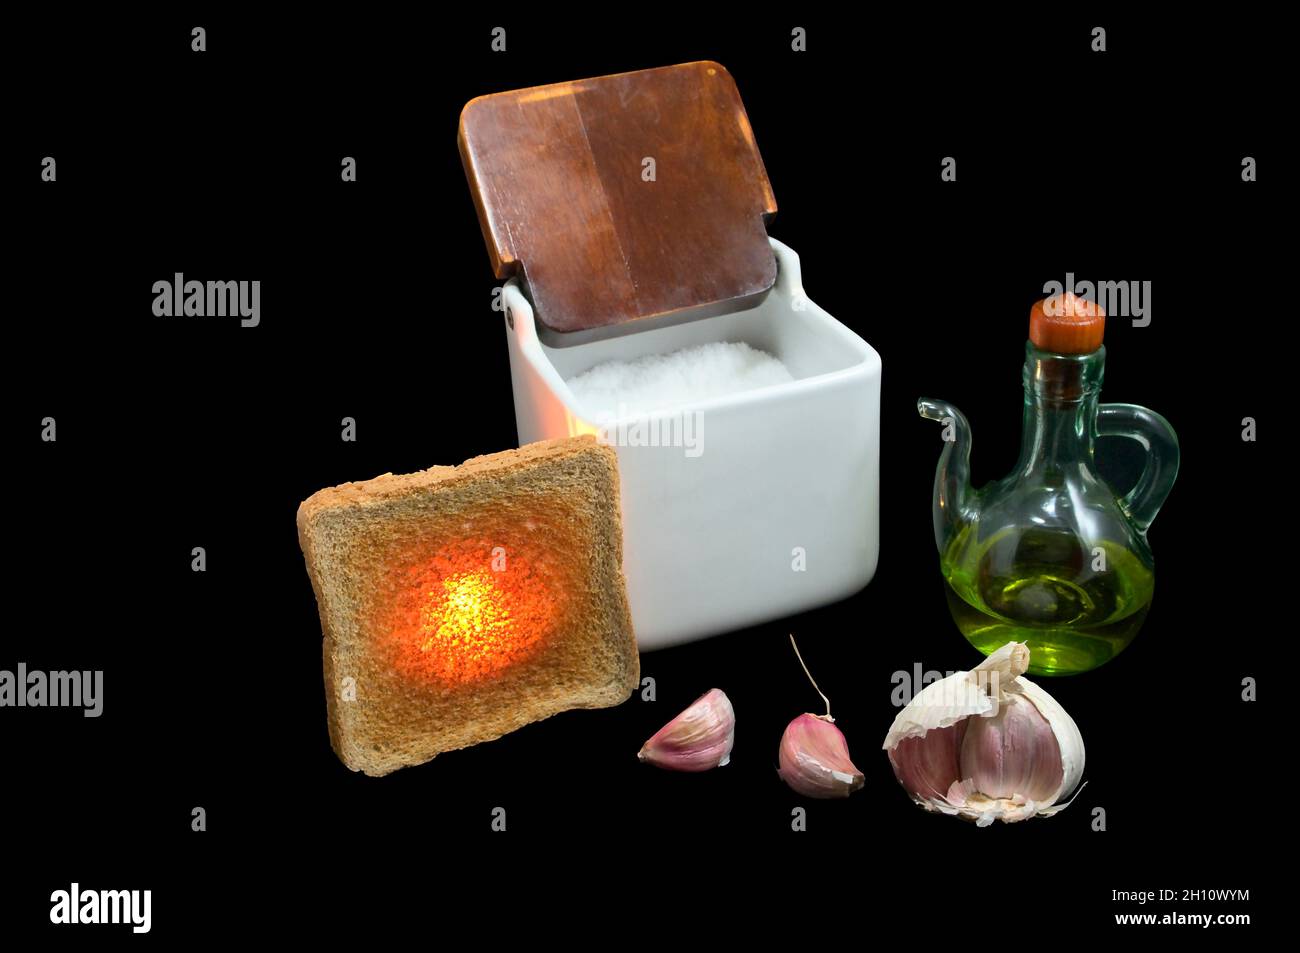 Durée de vie du pain grillé, de l'ail, de l'huile et du sel sur fond noir. Banque D'Images